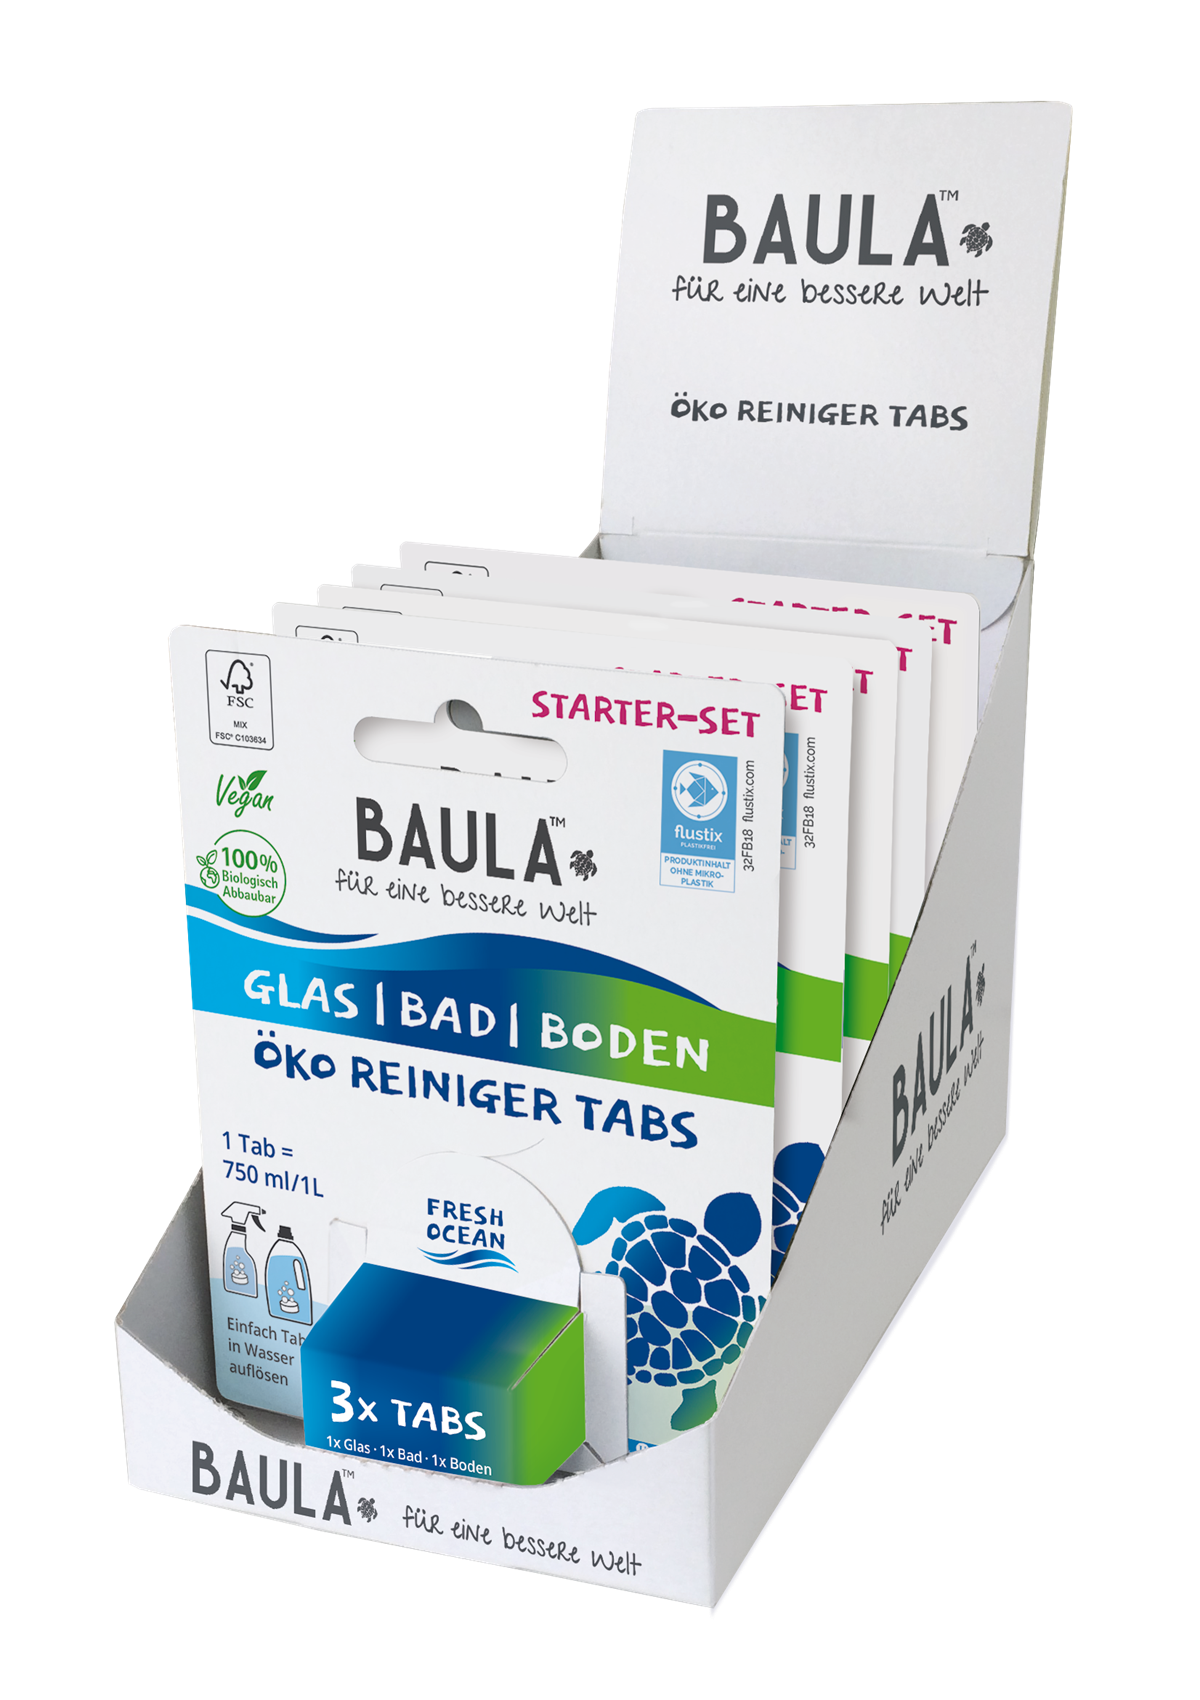 Starterset von BIOBAULA: Die Tabletten werden in Wasser aufgelöst, die Verpackung ist aus recycelbarem Karton. 